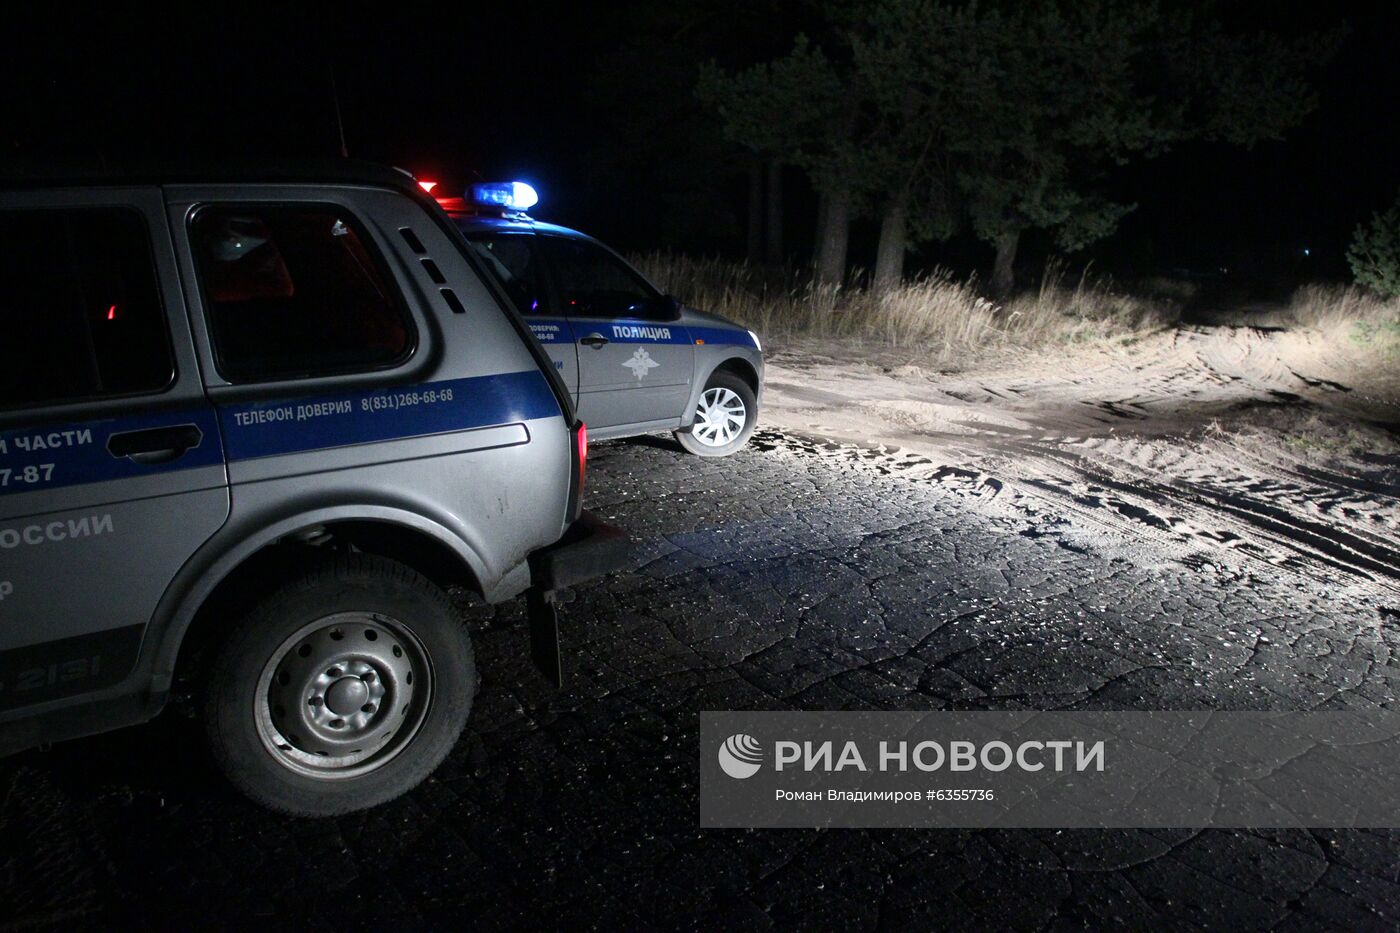 Обстрел остановки в Нижегородской области